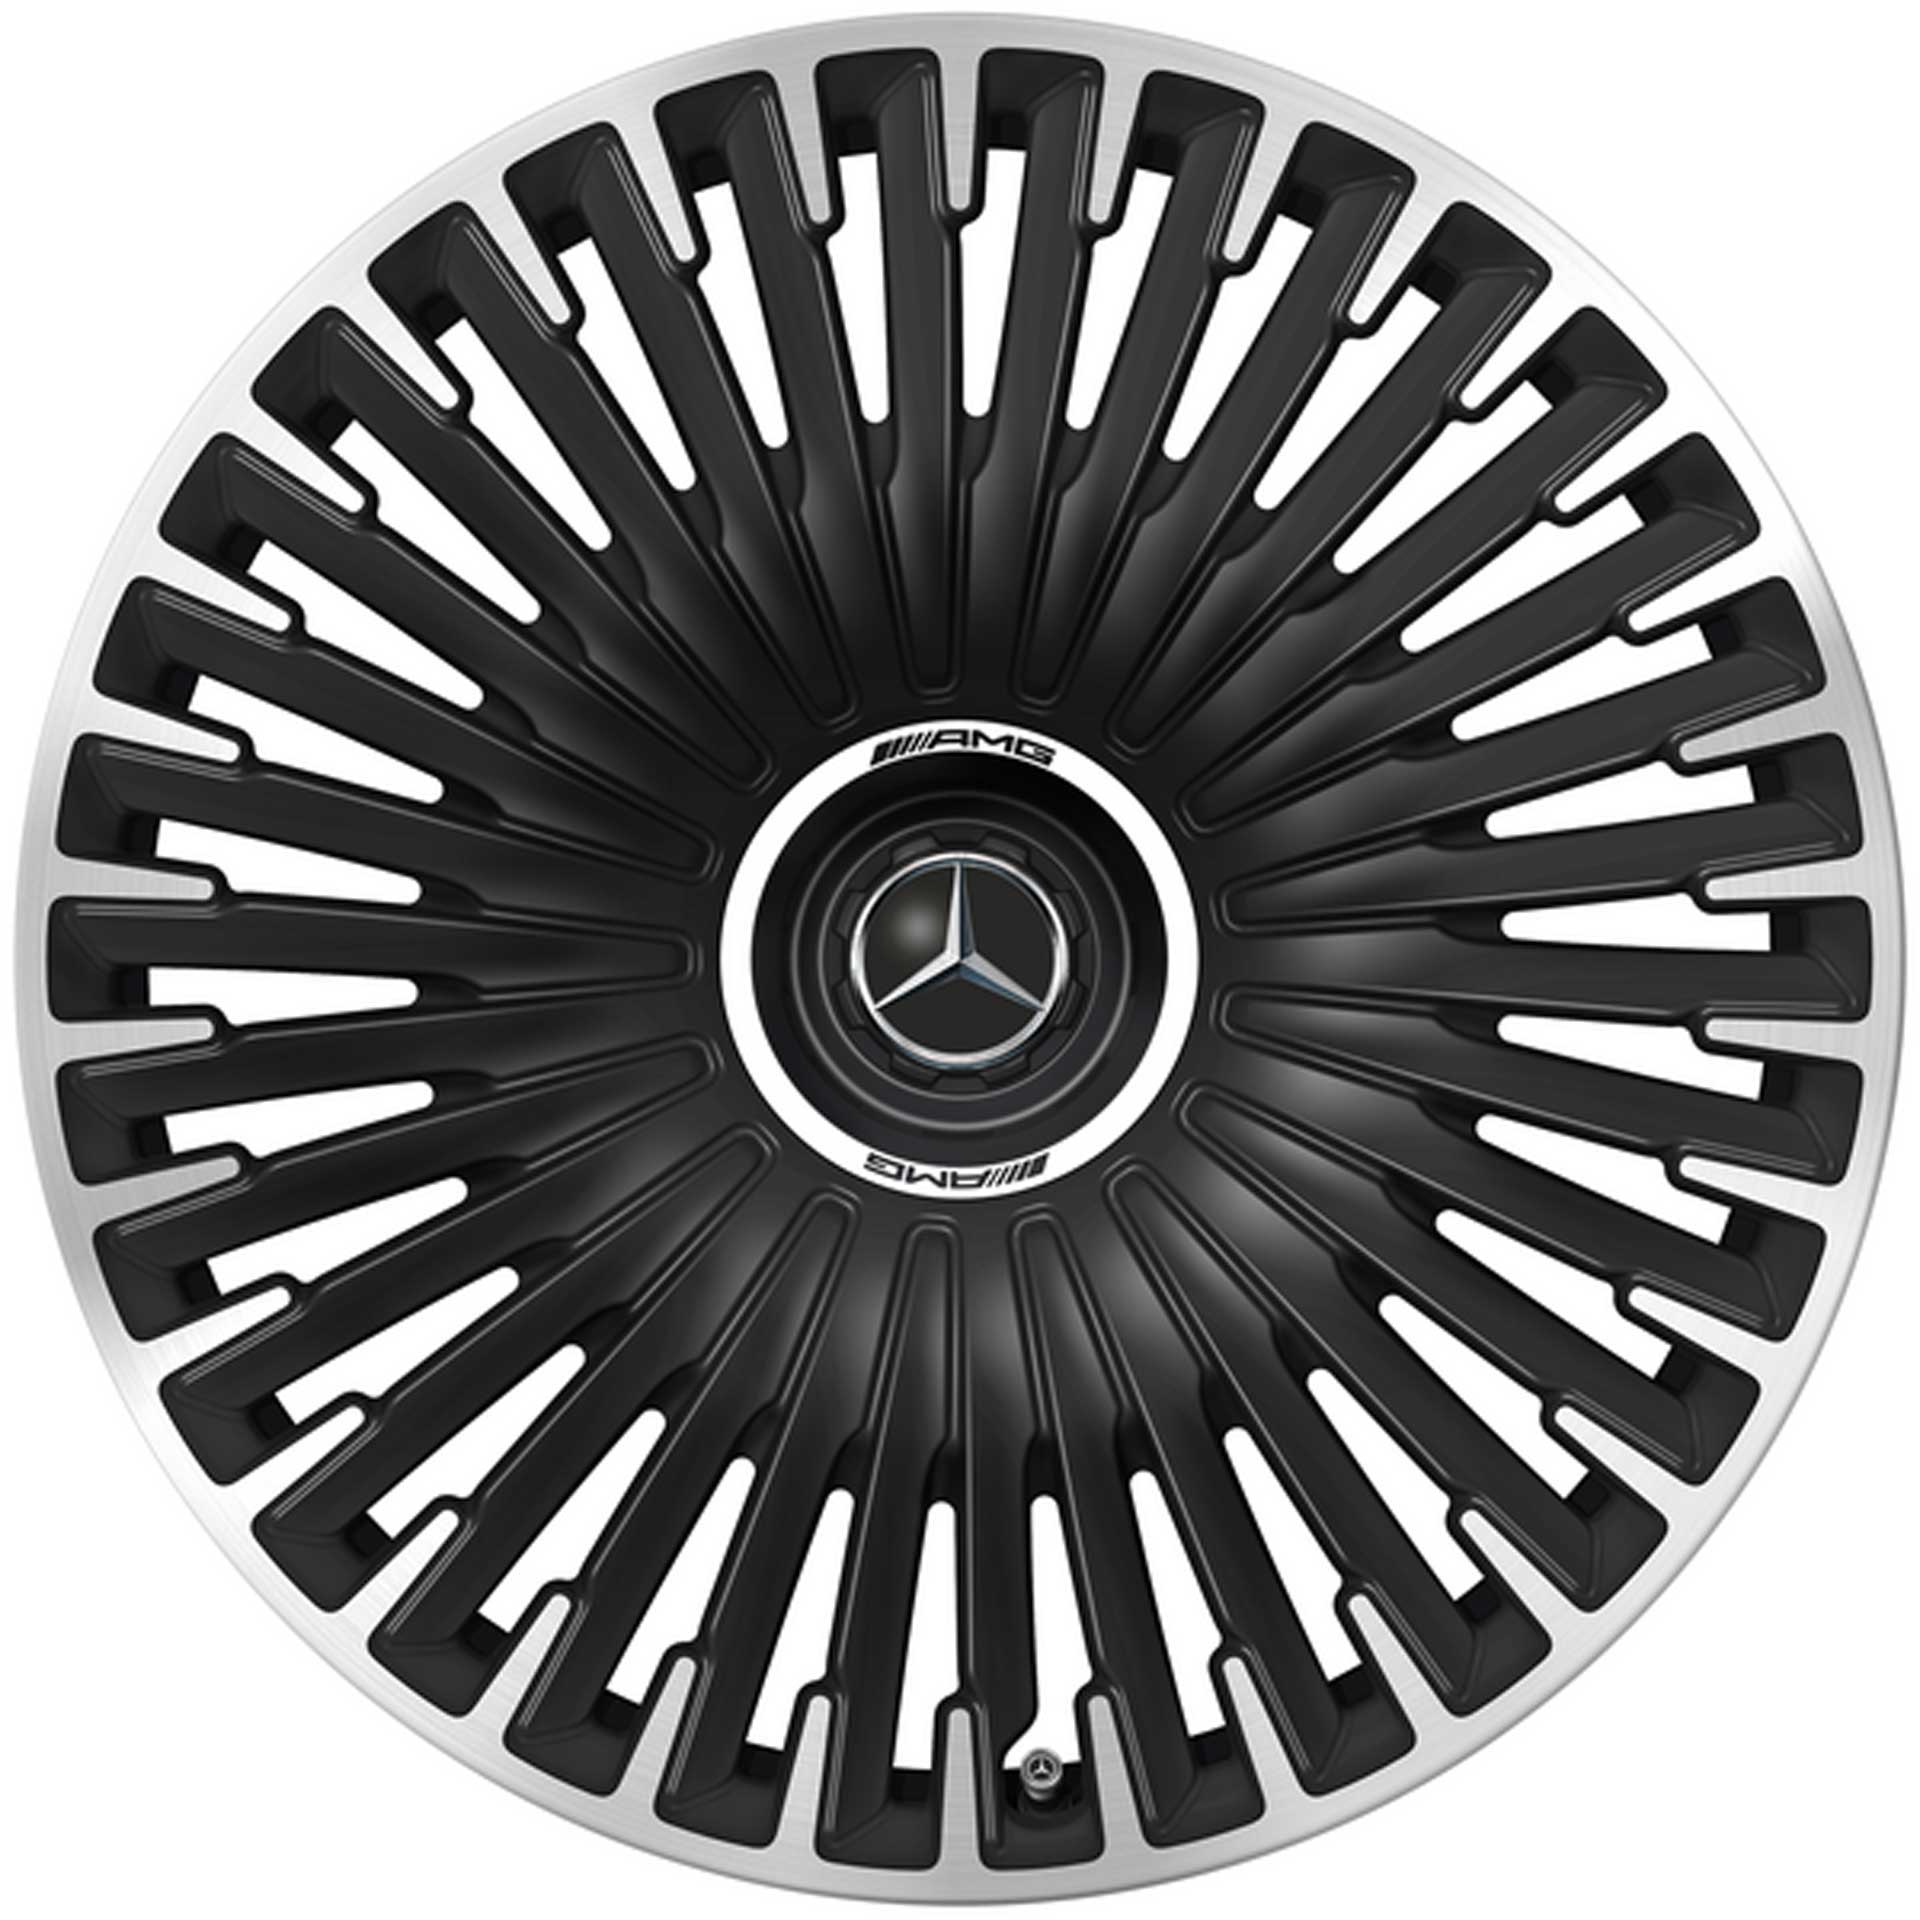 Mercedes-AMG Vielspeichen-Rad 21 Zoll Leichtmetallfelge EQE schwarz matt glanzgedreht A29540131007X71